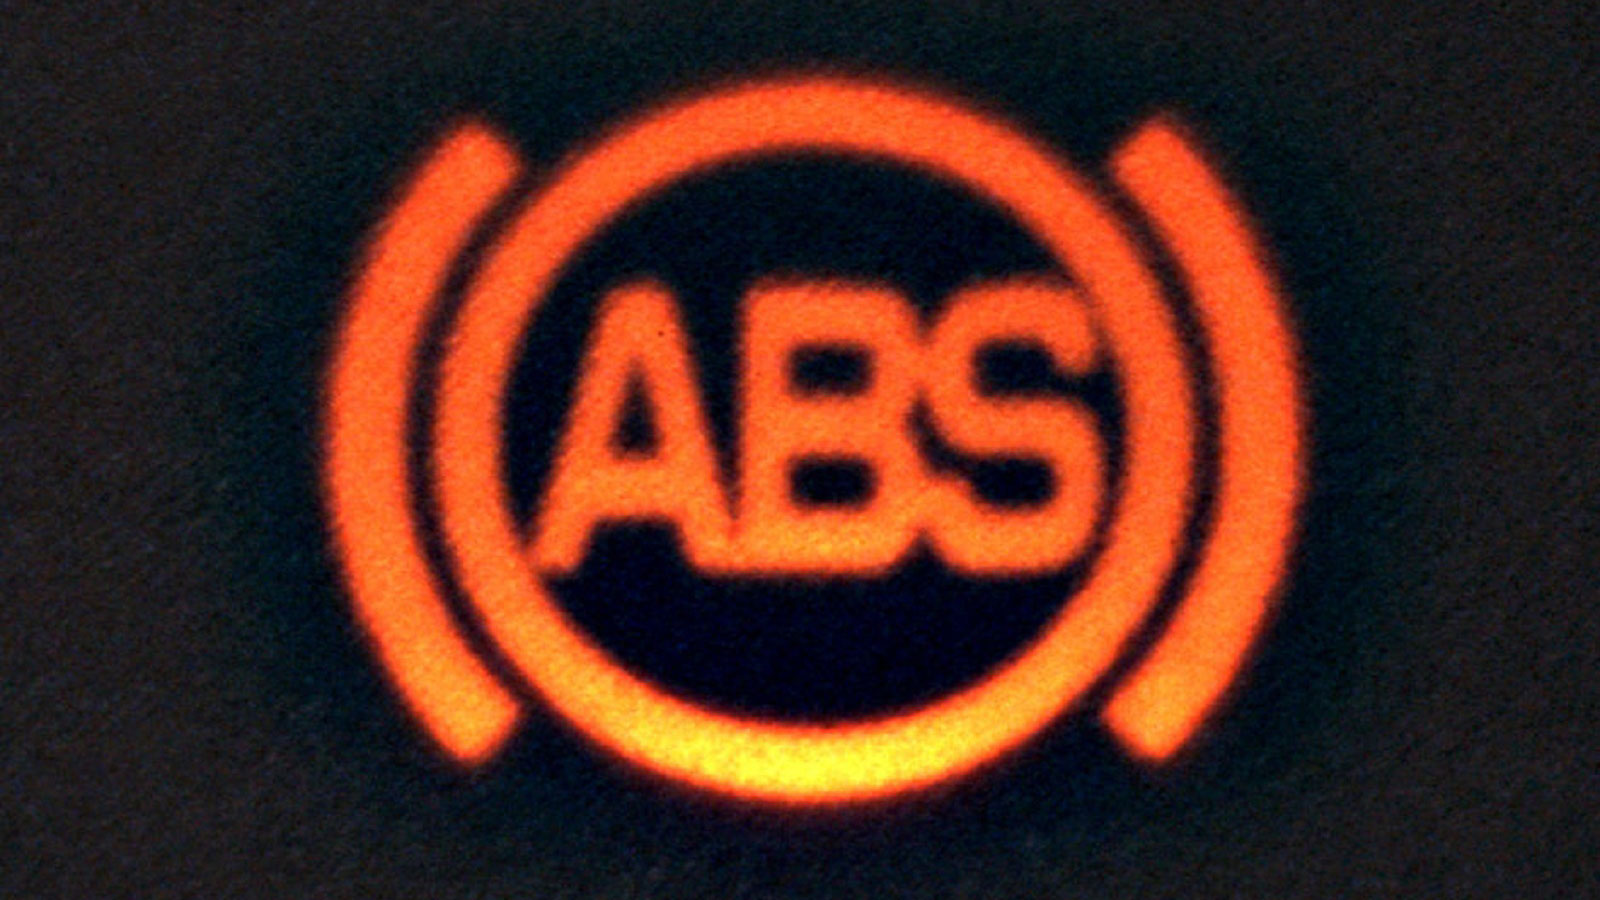 Абс знак на панели. Значок АБС на приборной панели. Лампа ABS. Значок АПС на приборной панели. Лампочка АБС на панели.